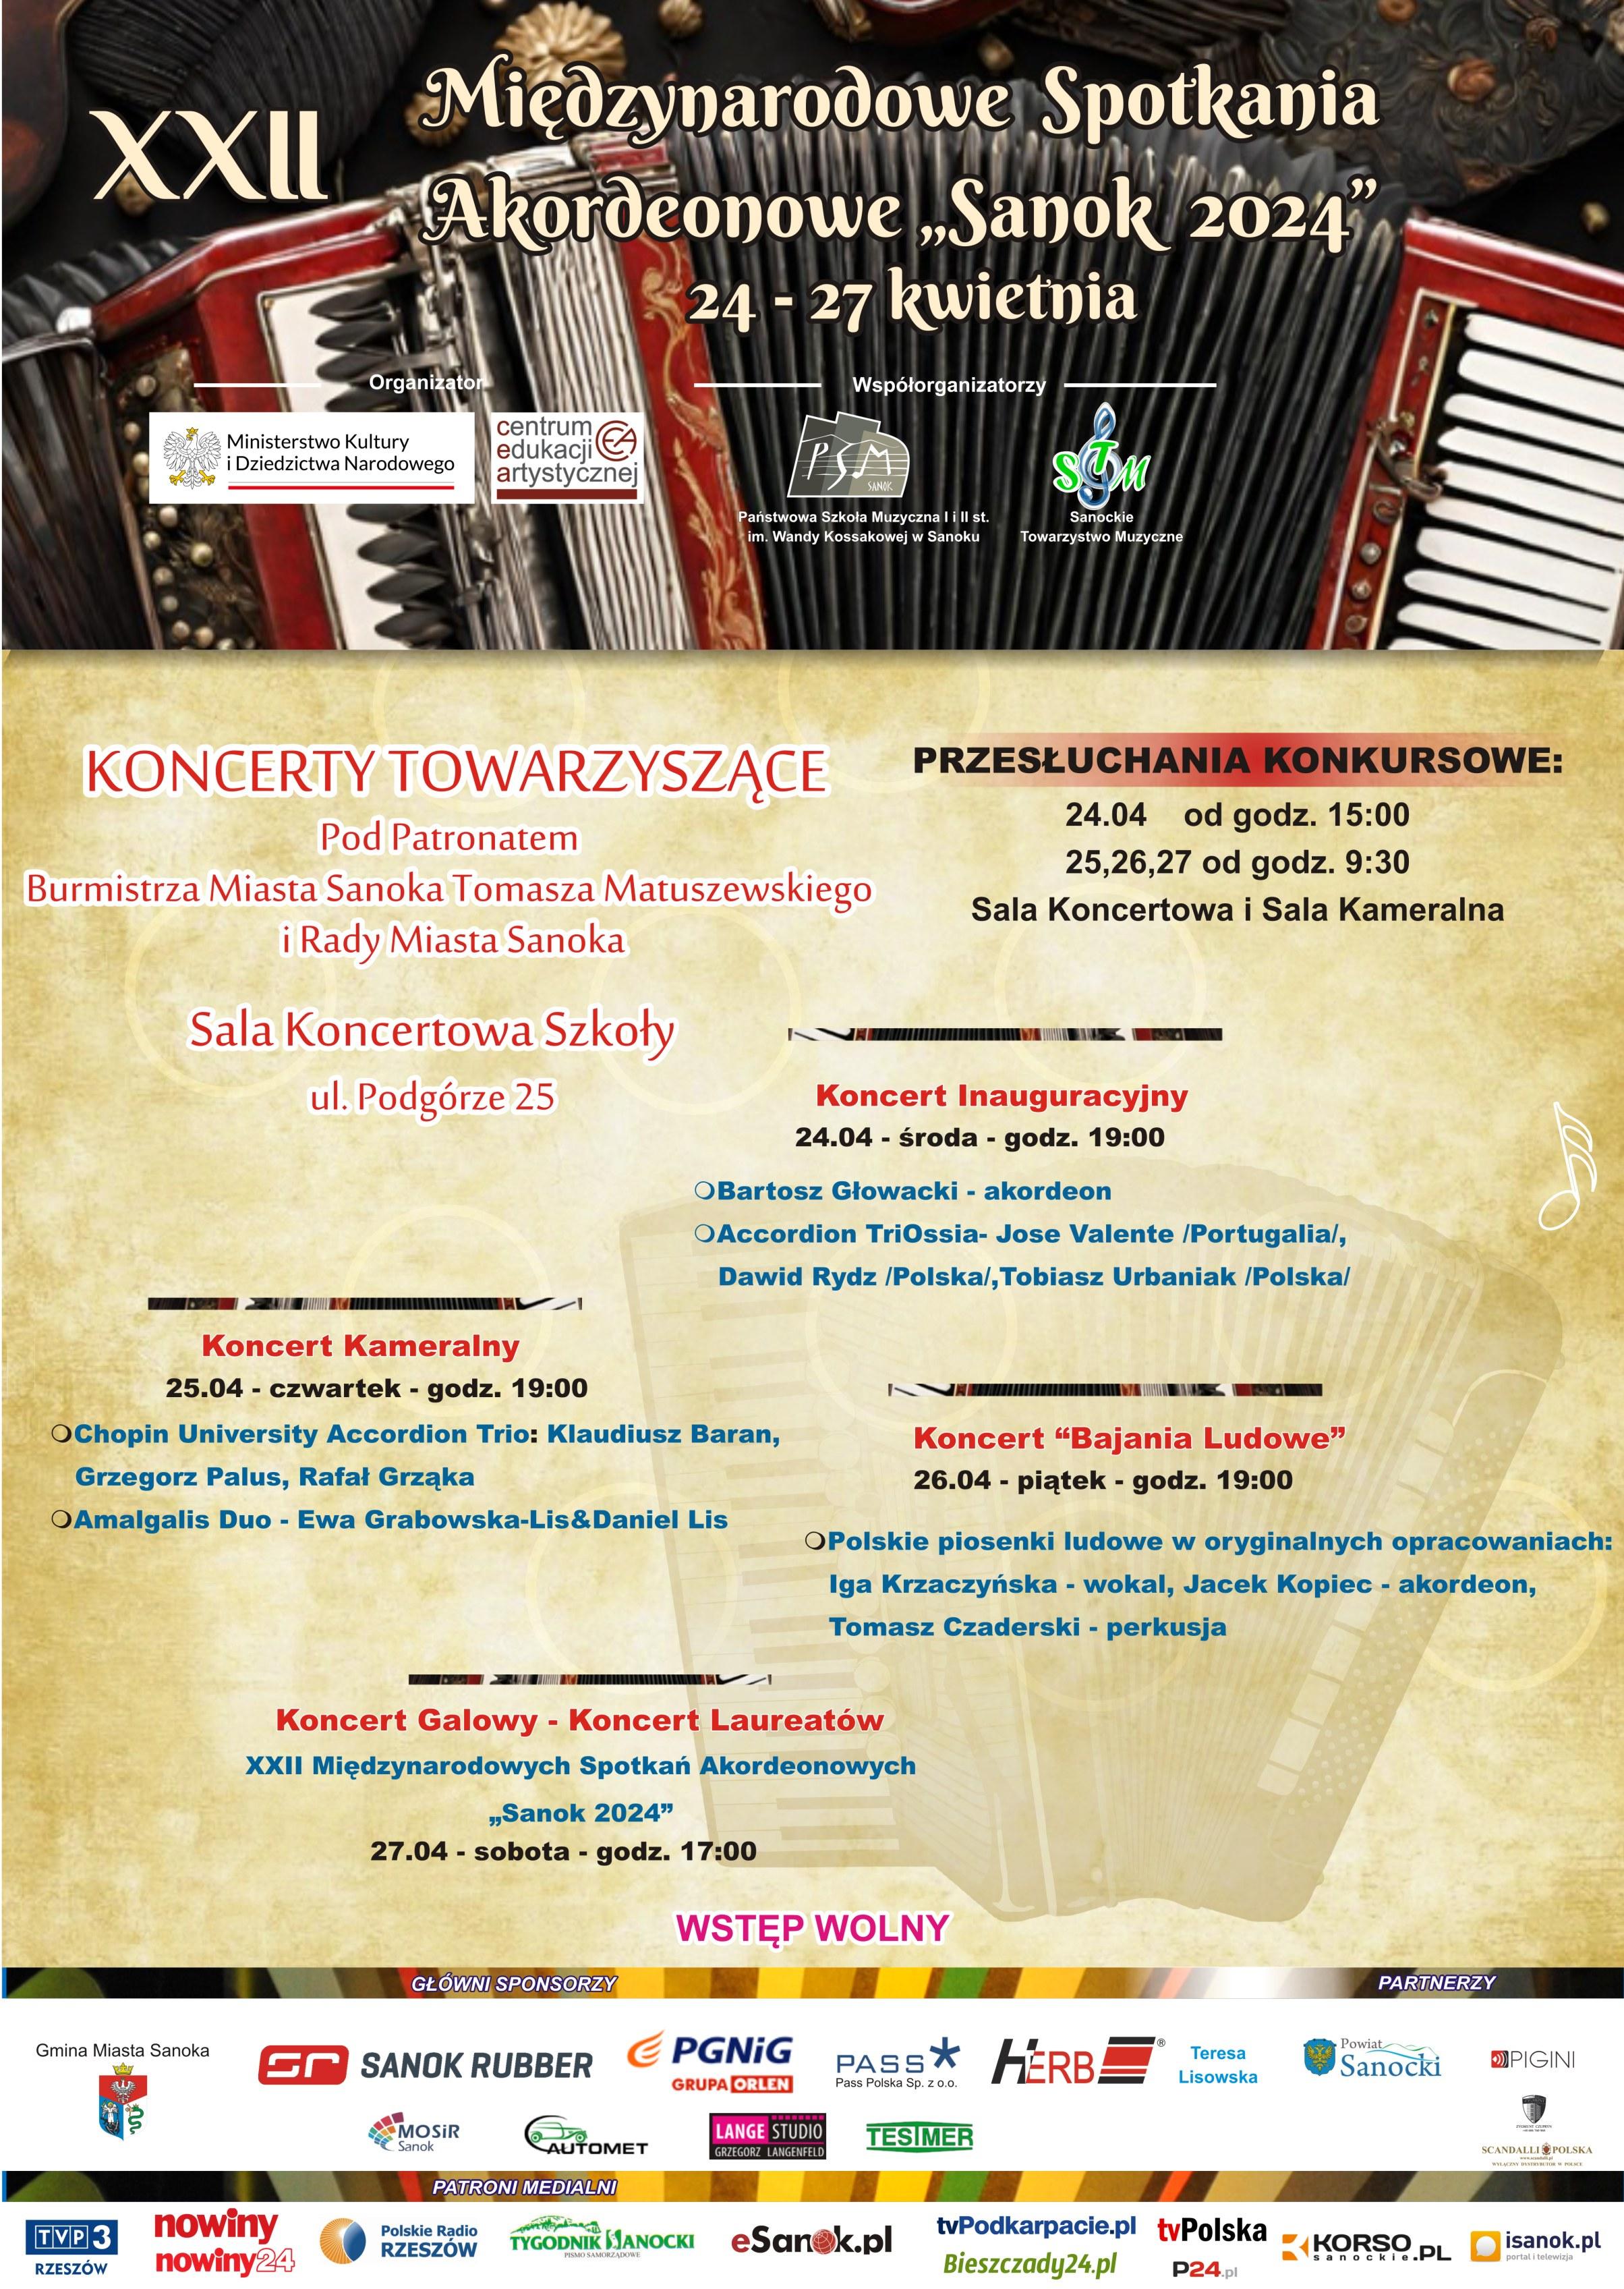 Plakat XXII Międzynarodowe Spotkania Akordeonowe Sanok 2024. W nagłówku akordeon, na środku opisy koncertów, w tle brązowy akordeon. Stopka Sponsorzy konkursu